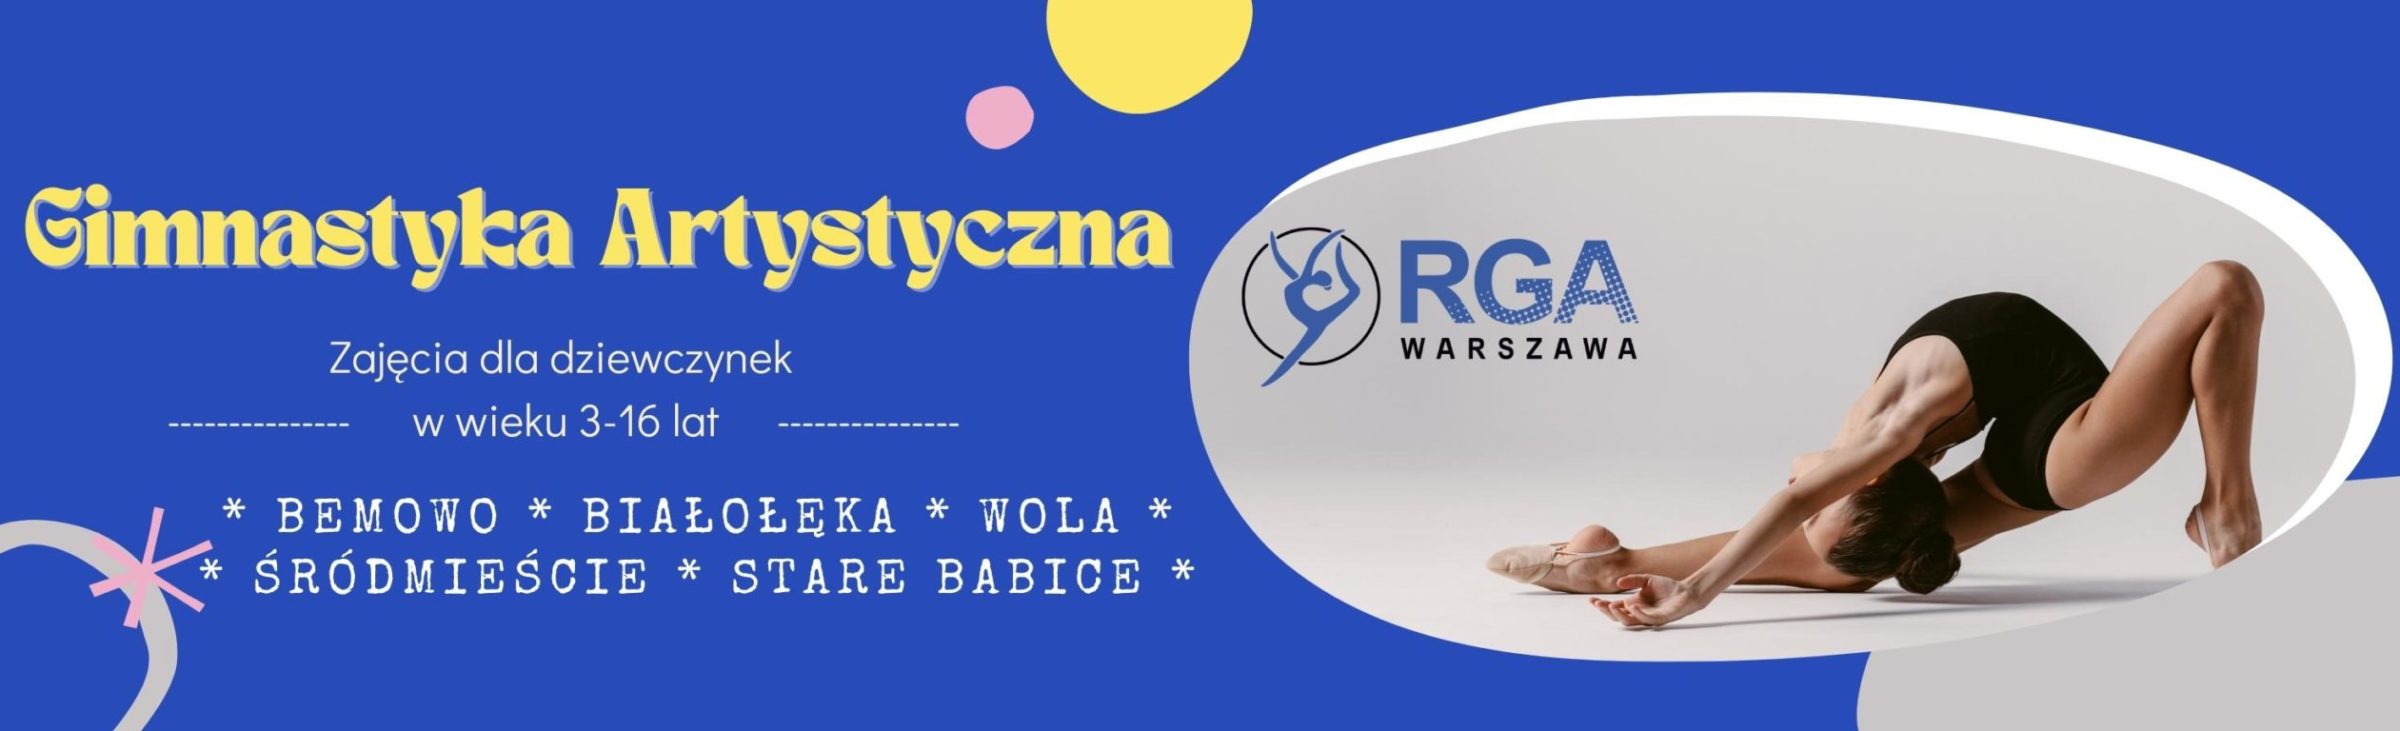 RGA Warszawa Gimnastyka Artystyczna